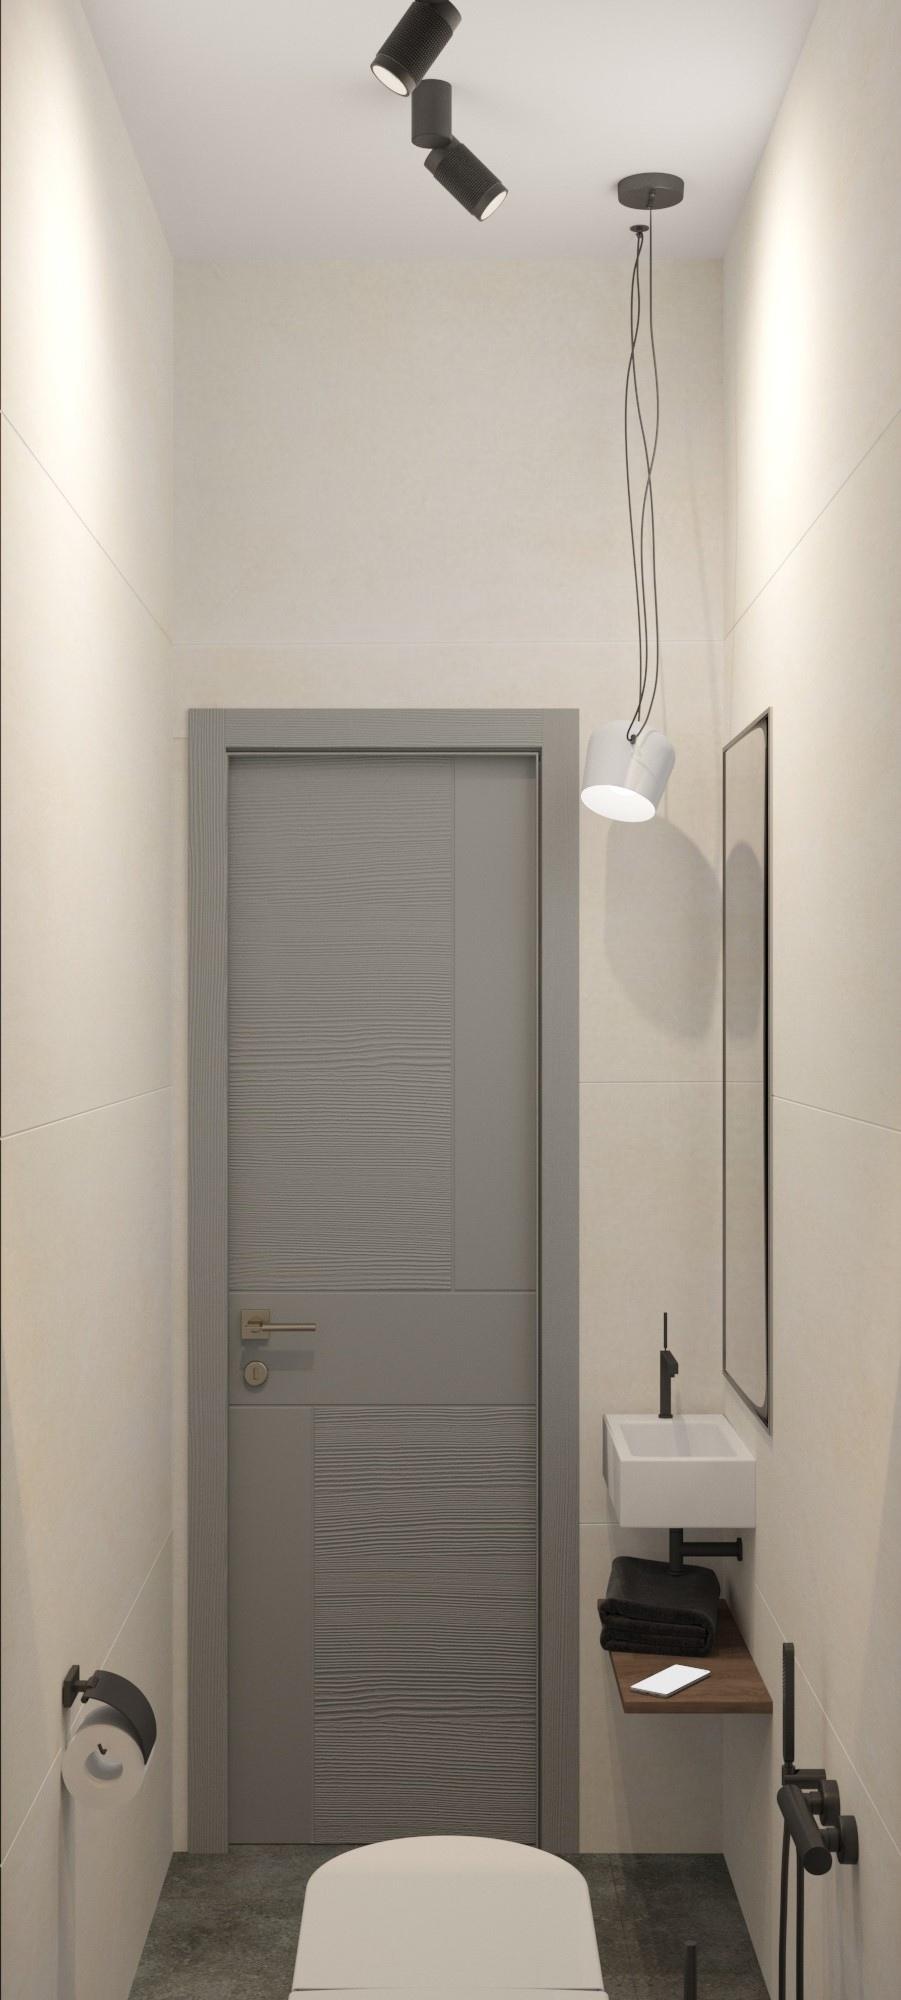 Интерьер ванной с подсветкой настенной, подсветкой светодиодной и дверными жалюзи